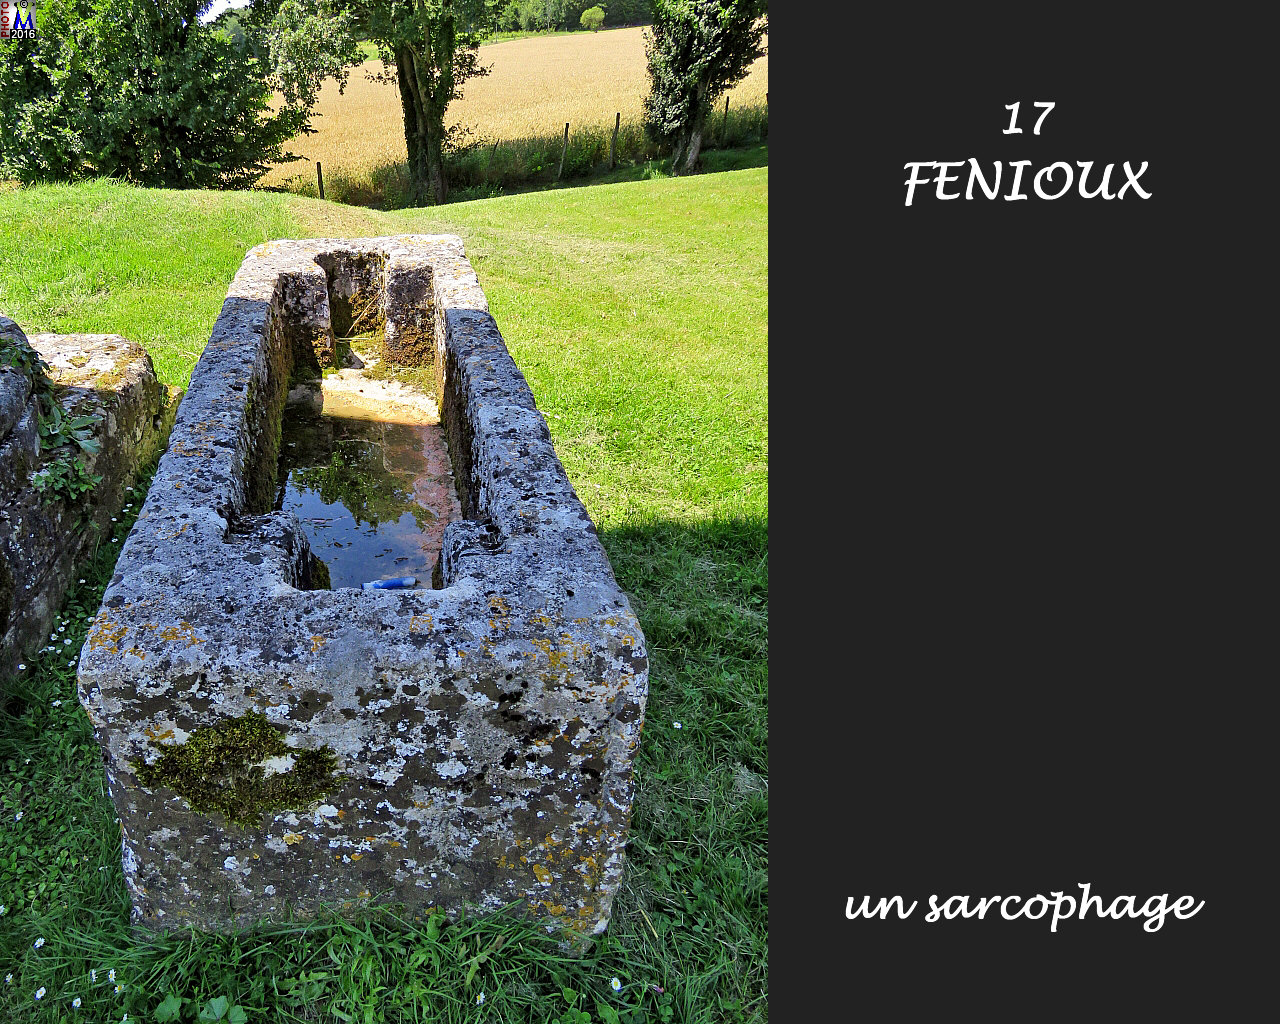 17FENIOUX_sarcophage_1000.jpg